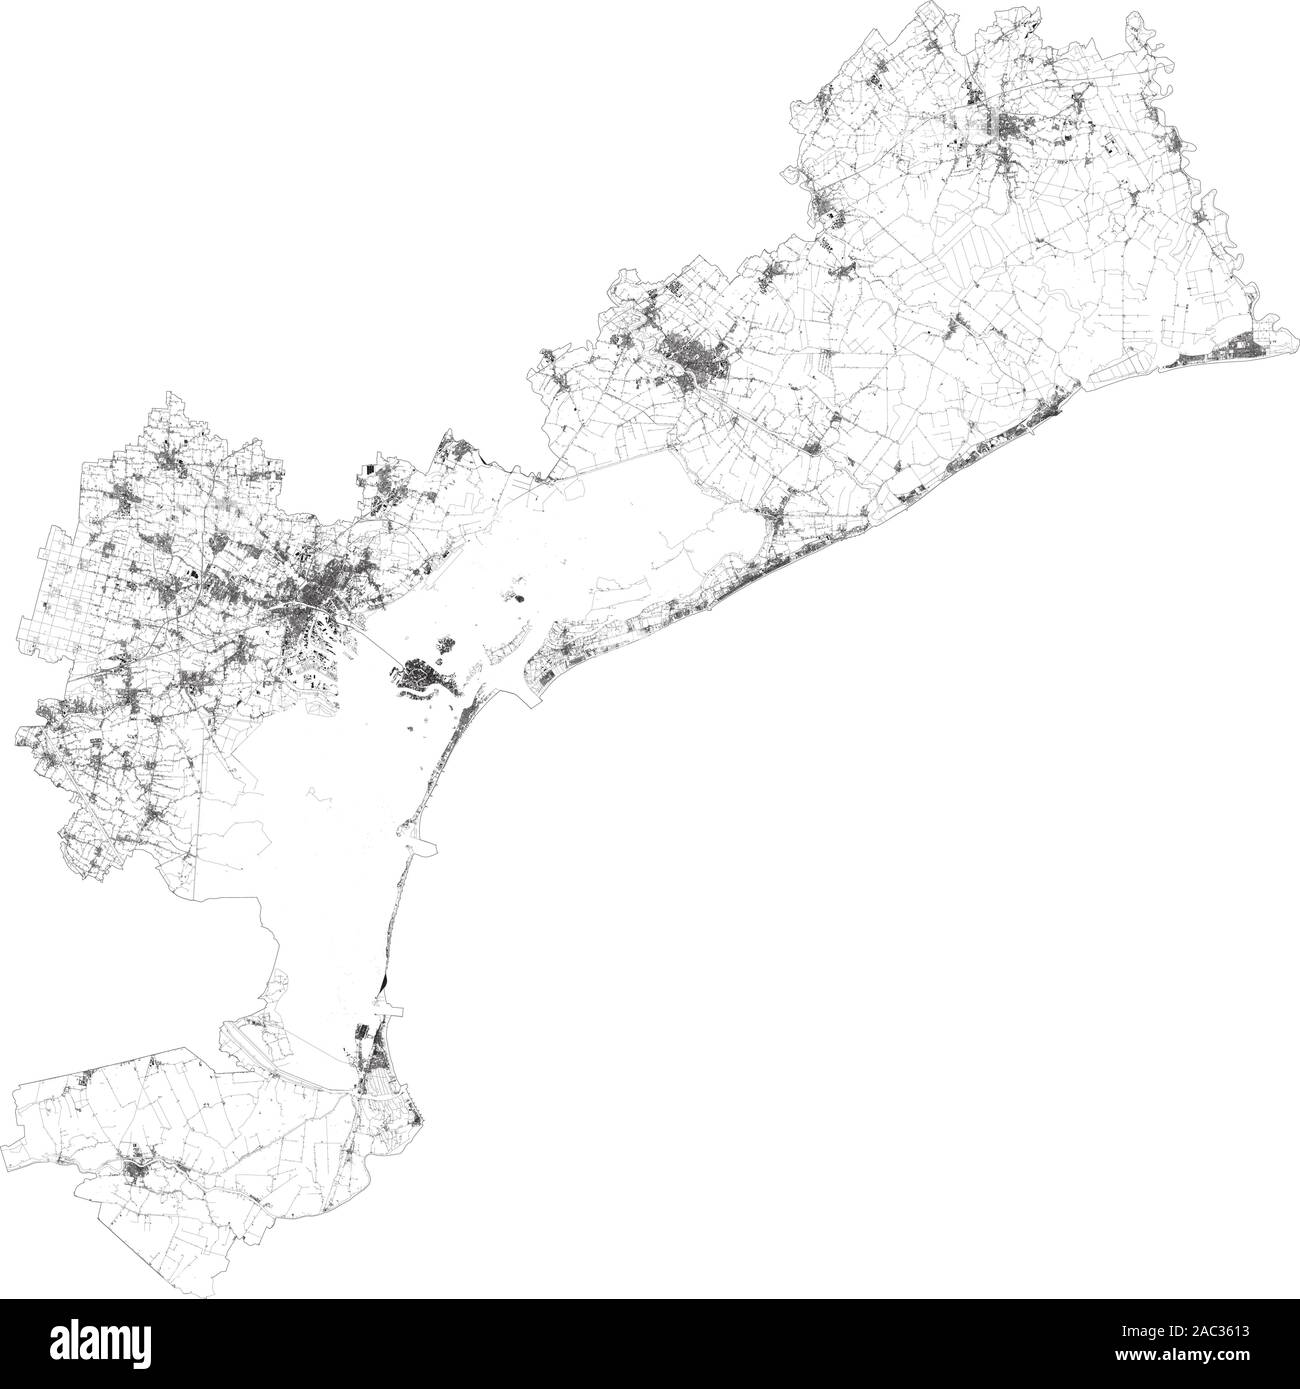 Mapa satelital de Venecia y sus alrededores. Veneto, Italia. Mapa de carreteras, autopistas y carreteras de circunvalación, ríos, líneas ferroviarias Ilustración del Vector